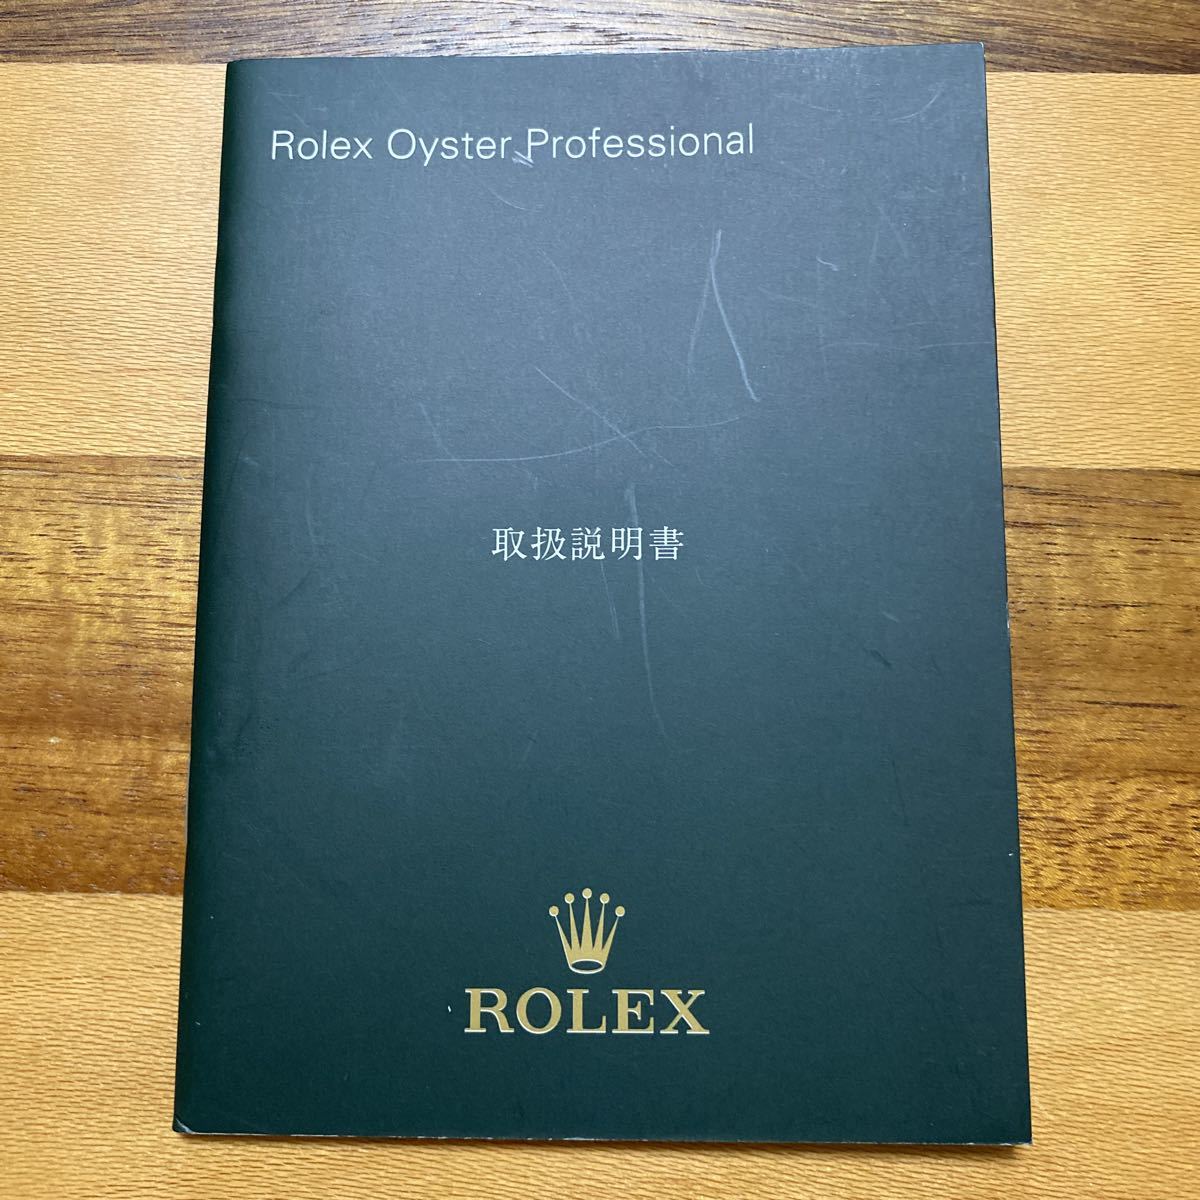 1729 希少必見 ロレックス 取扱説明書 ROLEX 日本語 最新情報 スポロレ 定形94円発送可能